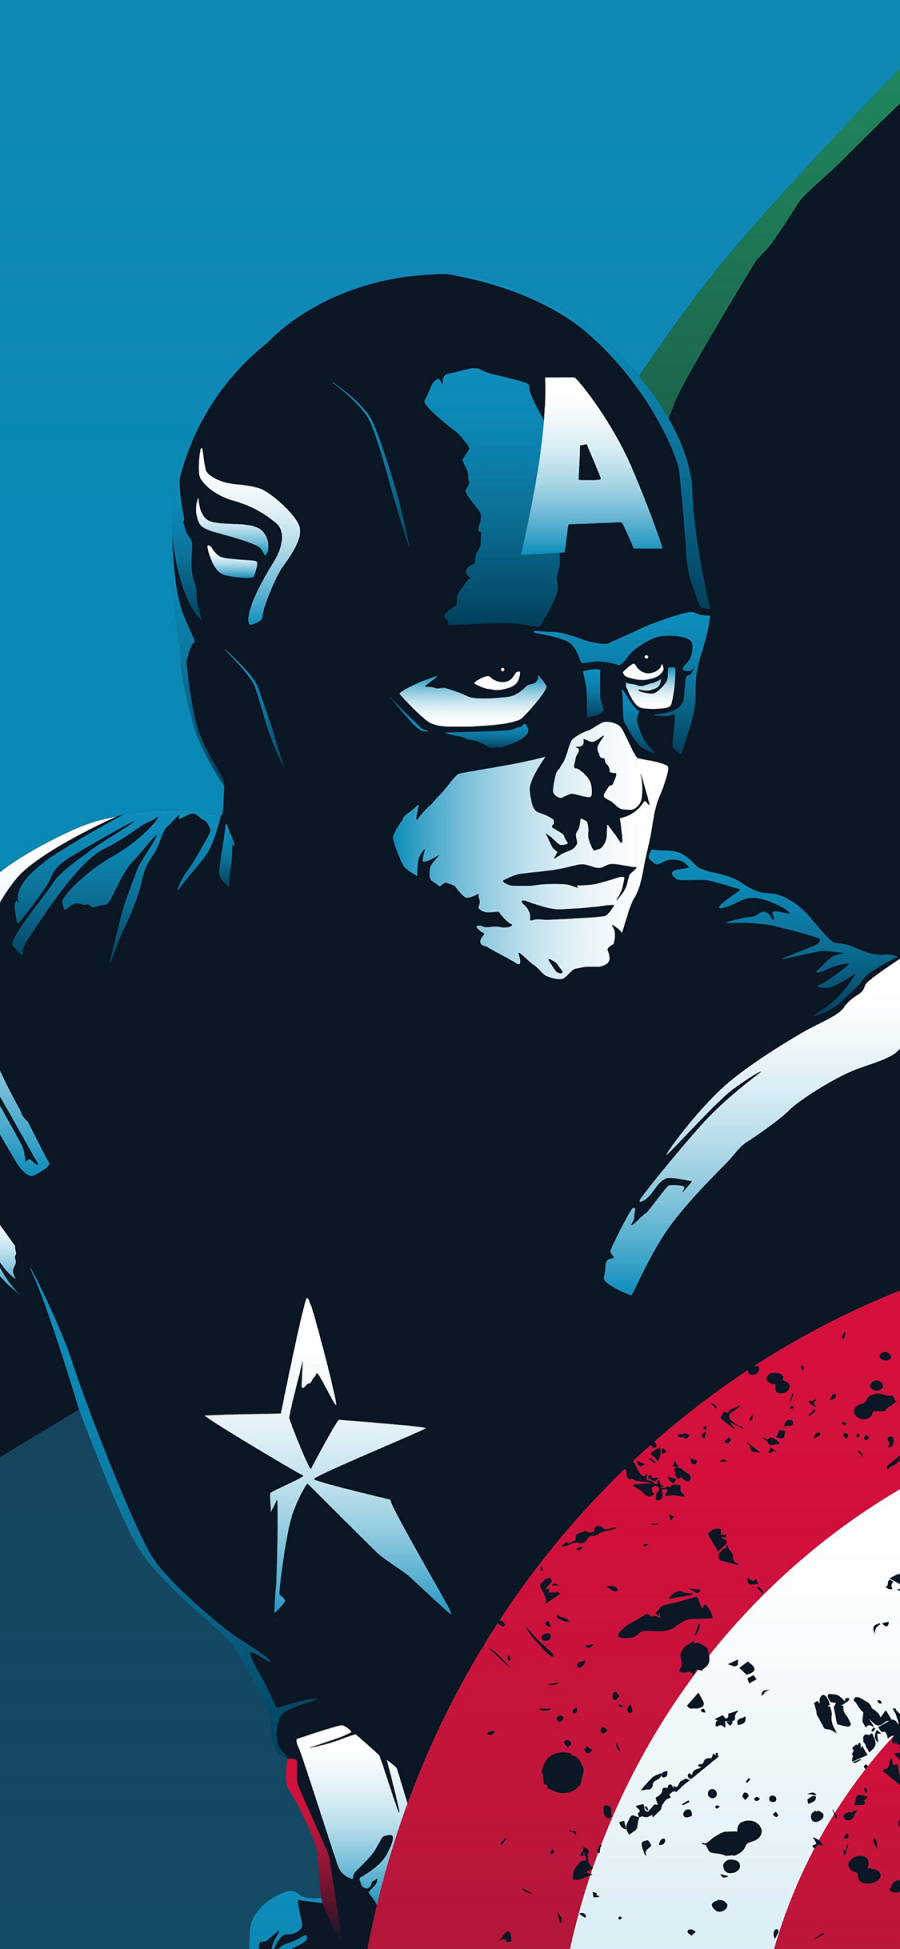 [2436×1125]美国队长 漫威 超级英雄 漫画 欧美 复仇者联盟 苹果手机动漫壁纸图片